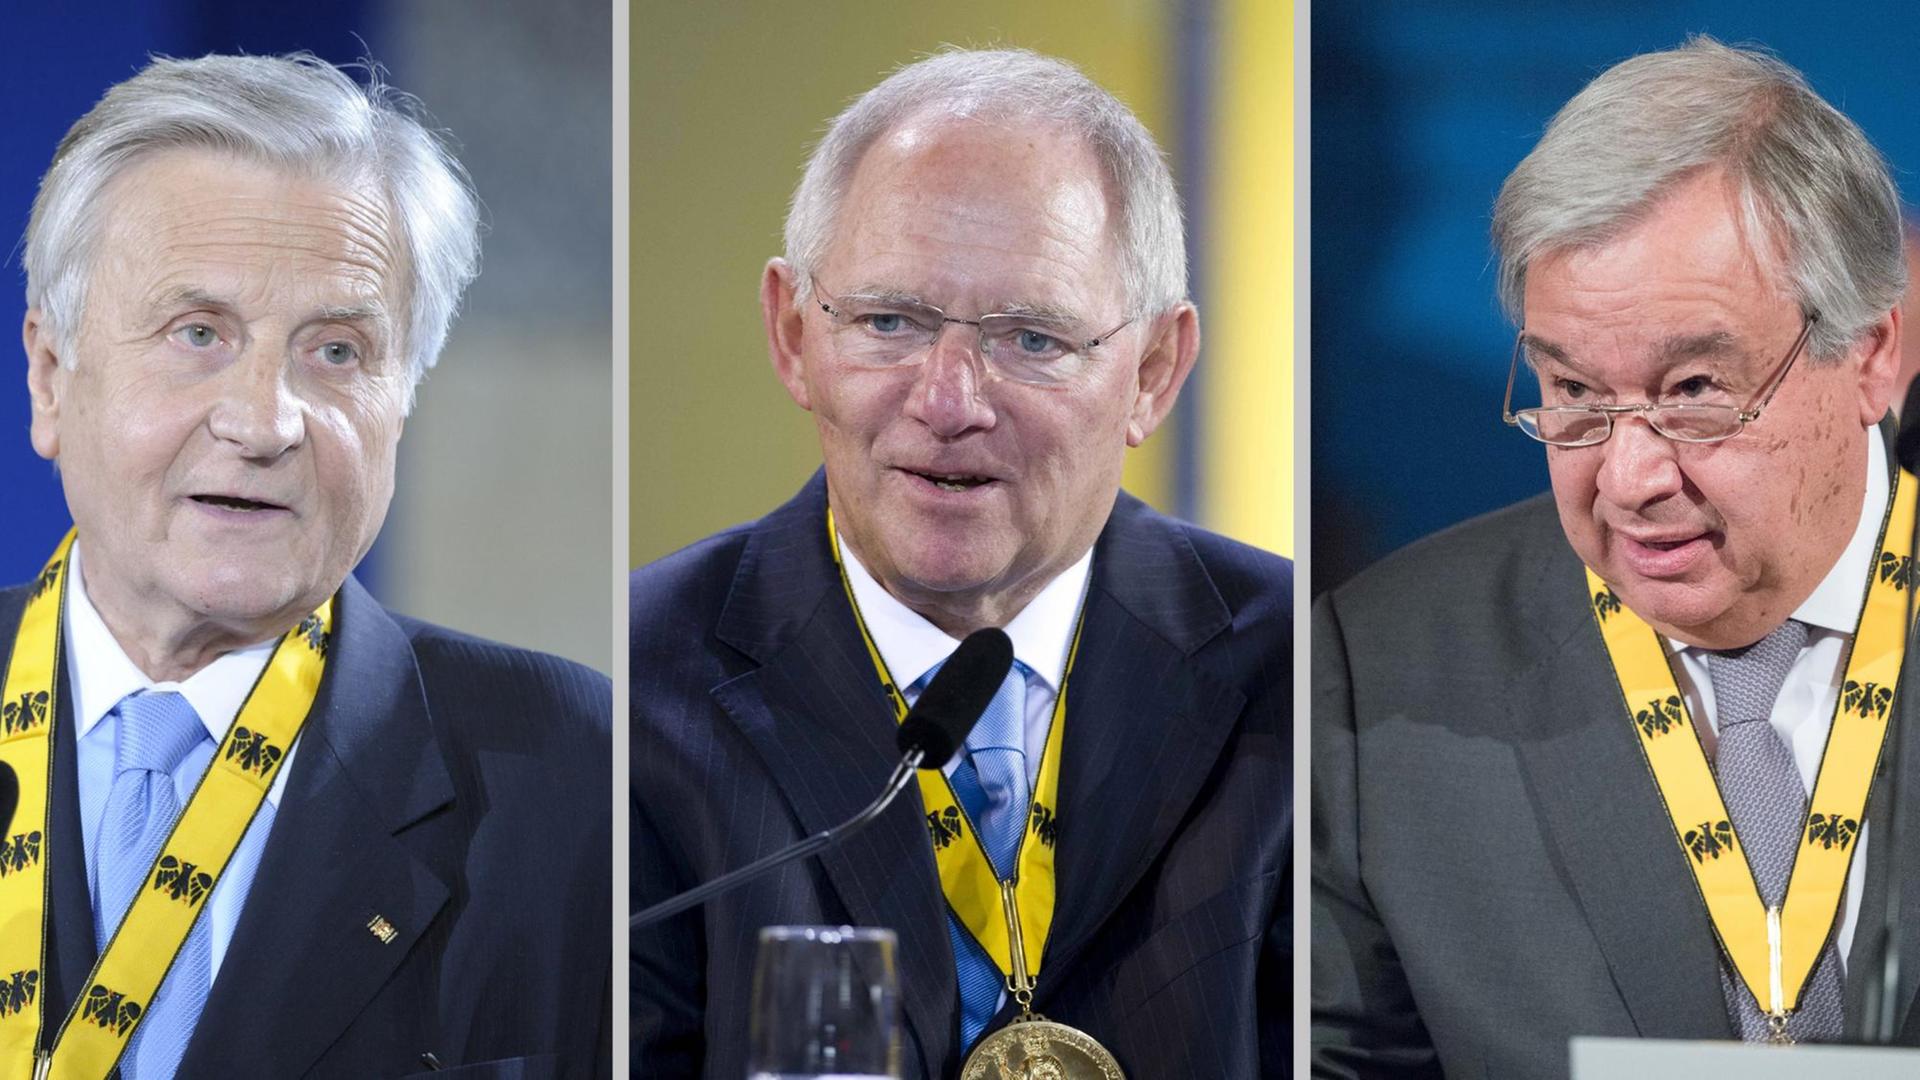 Fotocollage: Jean-Claude Trichet (l), Wolfgang Schäuble und António Guterres bei der Verleihung des Karlspreises.